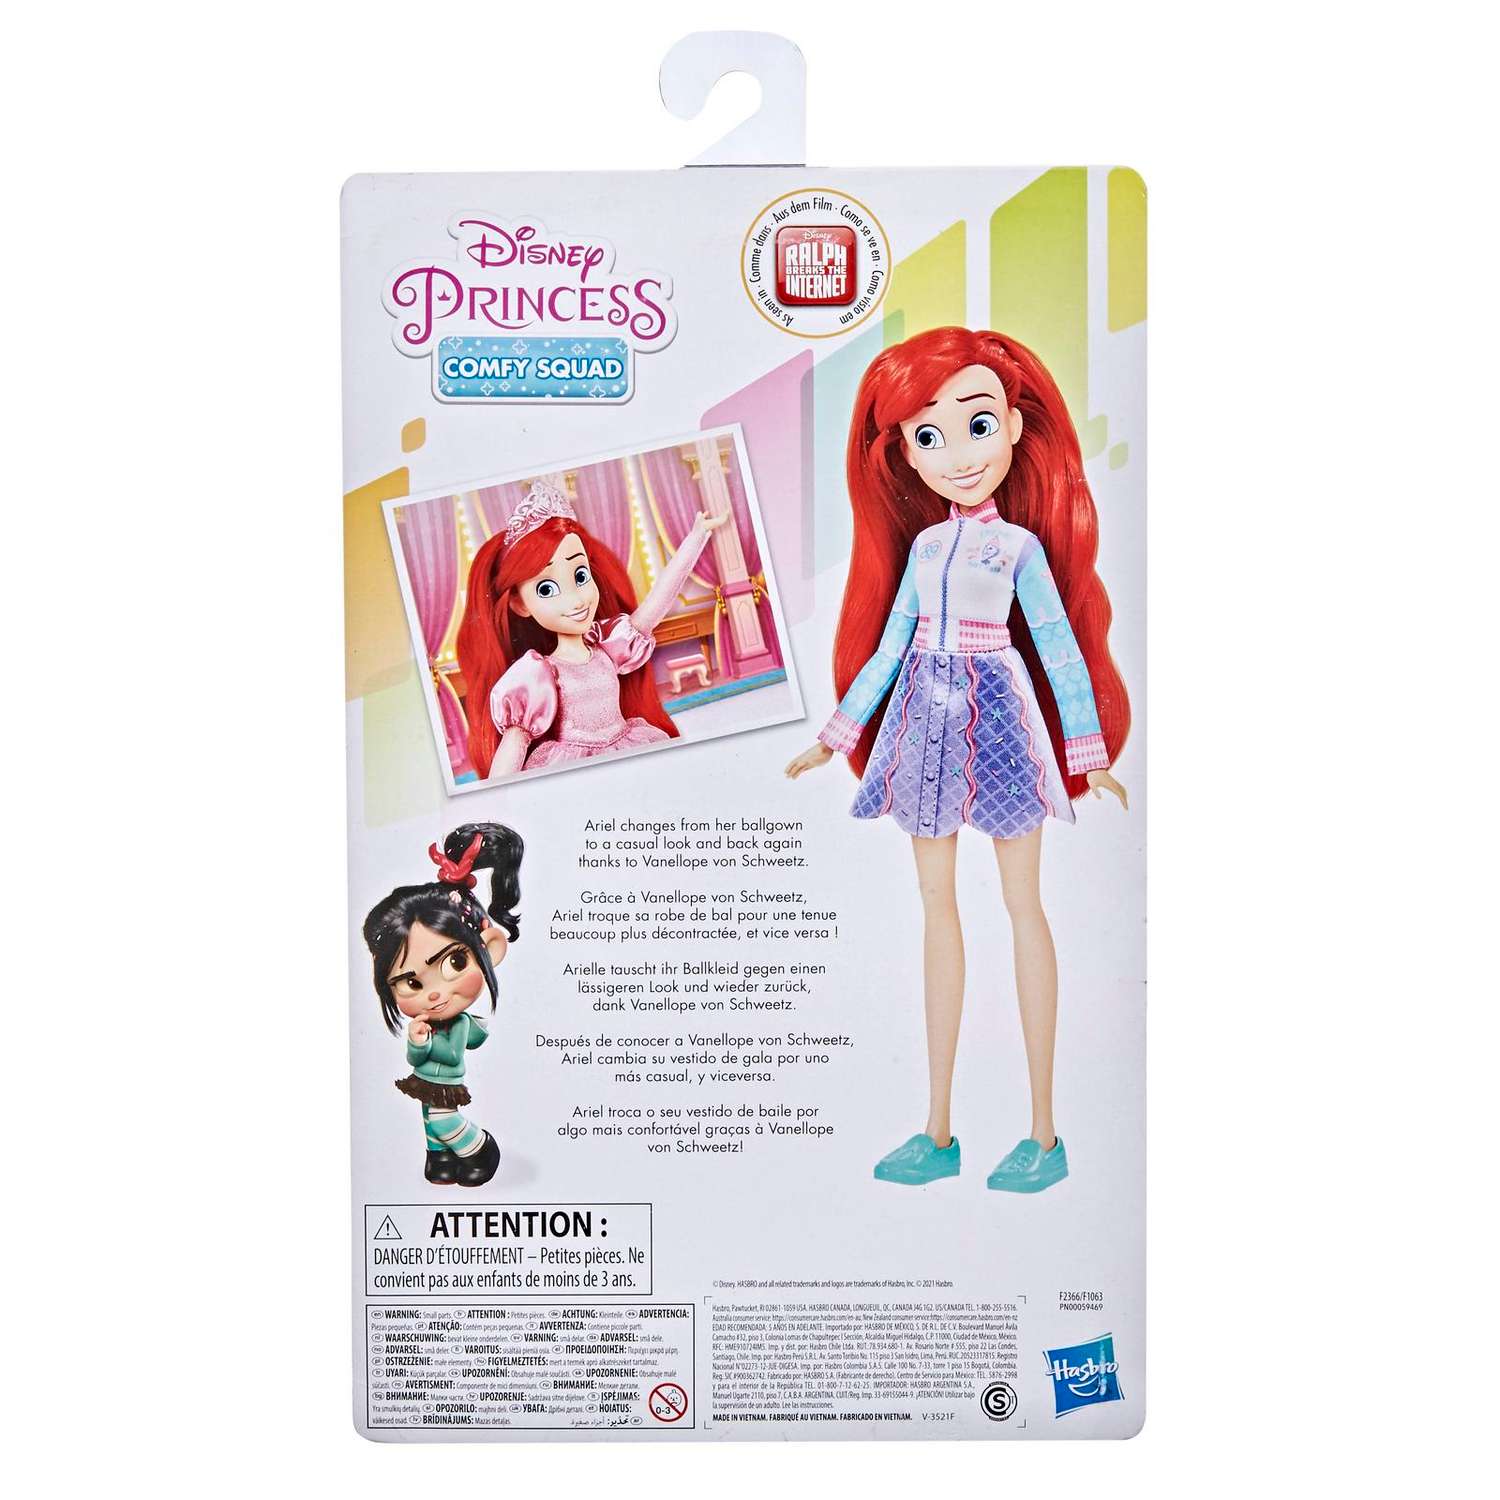 Кукла Disney Princess Disney Princess Hasbro Комфи Ариэль 2наряда F23665X0 F23665X0 - фото 3